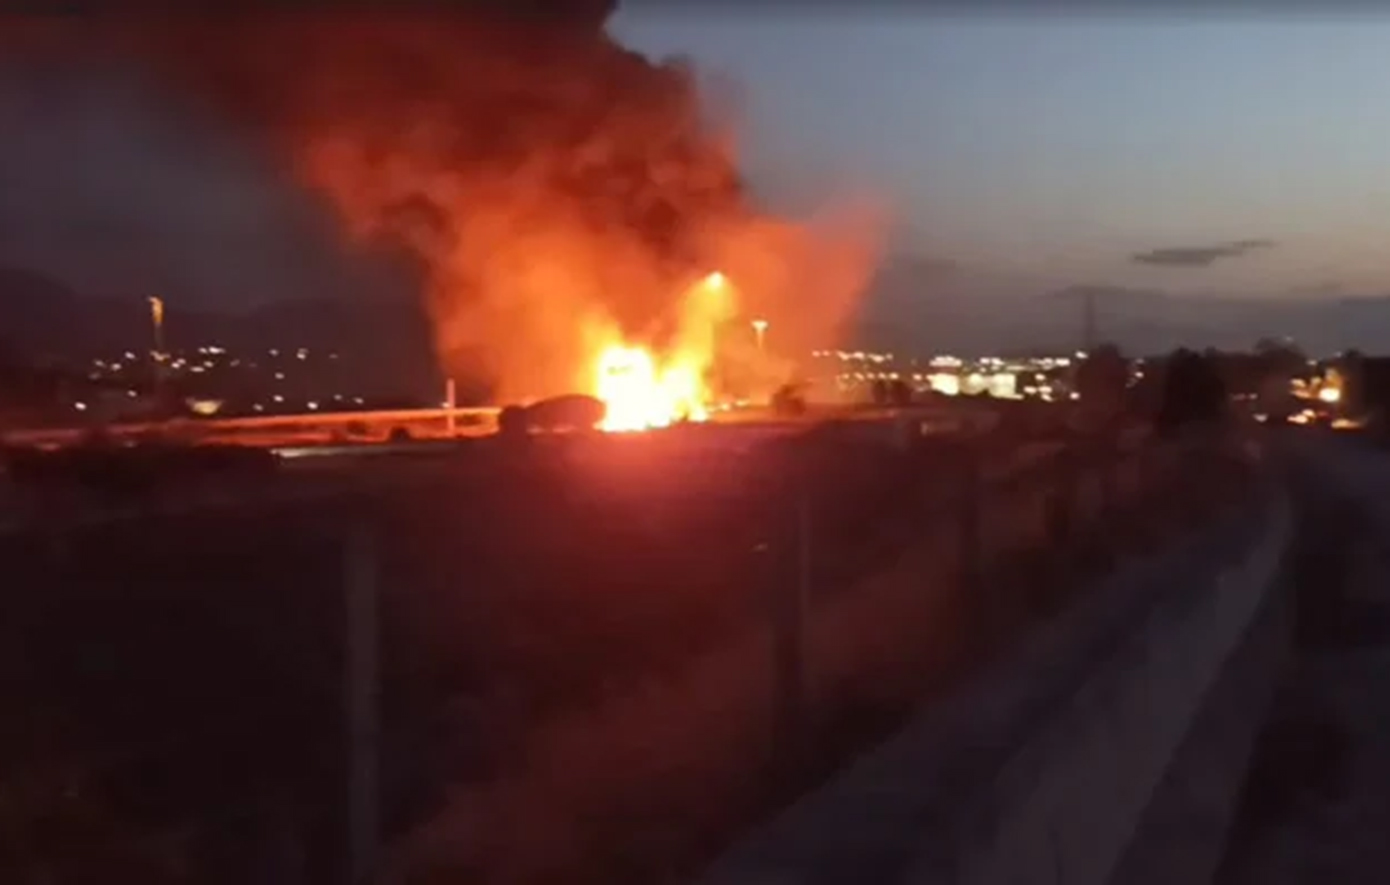 Χάος στην Αθηνών – Κορίνθου από τη φωτιά μετά την ανατροπή βυτιοφόρου, κλειστά και τα δύο ρεύματα και ουρές χιλιομέτρων - Μήνυμα από το 112